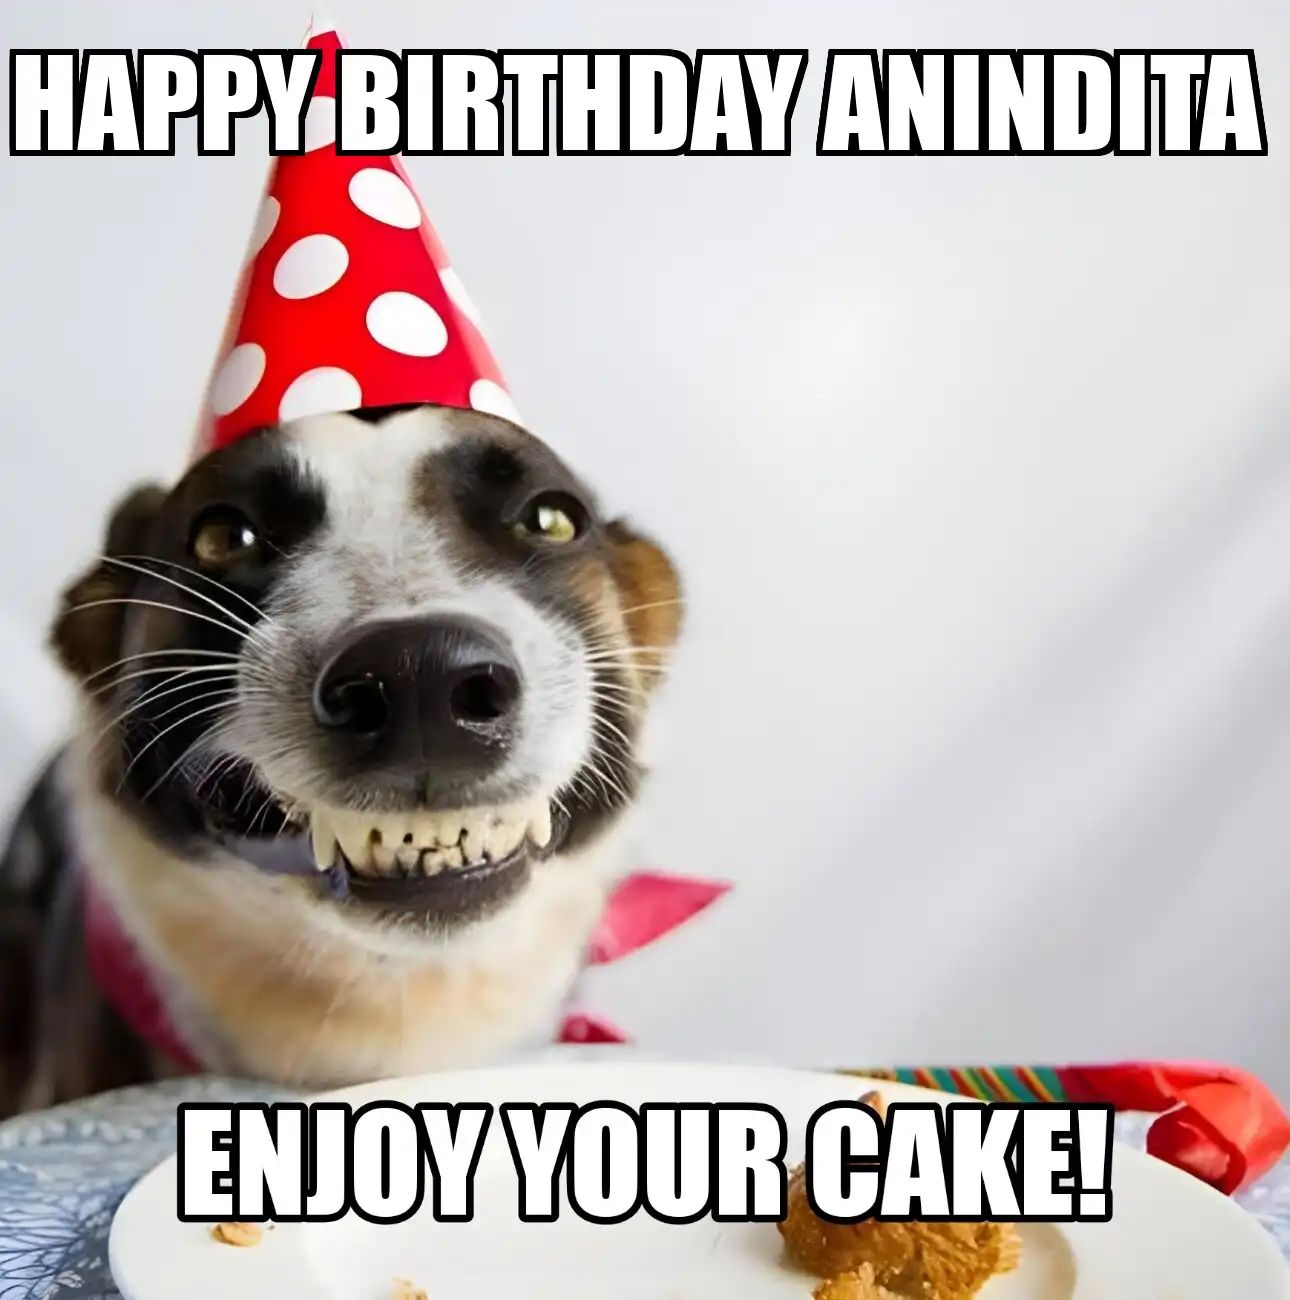 Happy Birthday Anindita Enjoy Your Cake Dog Meme